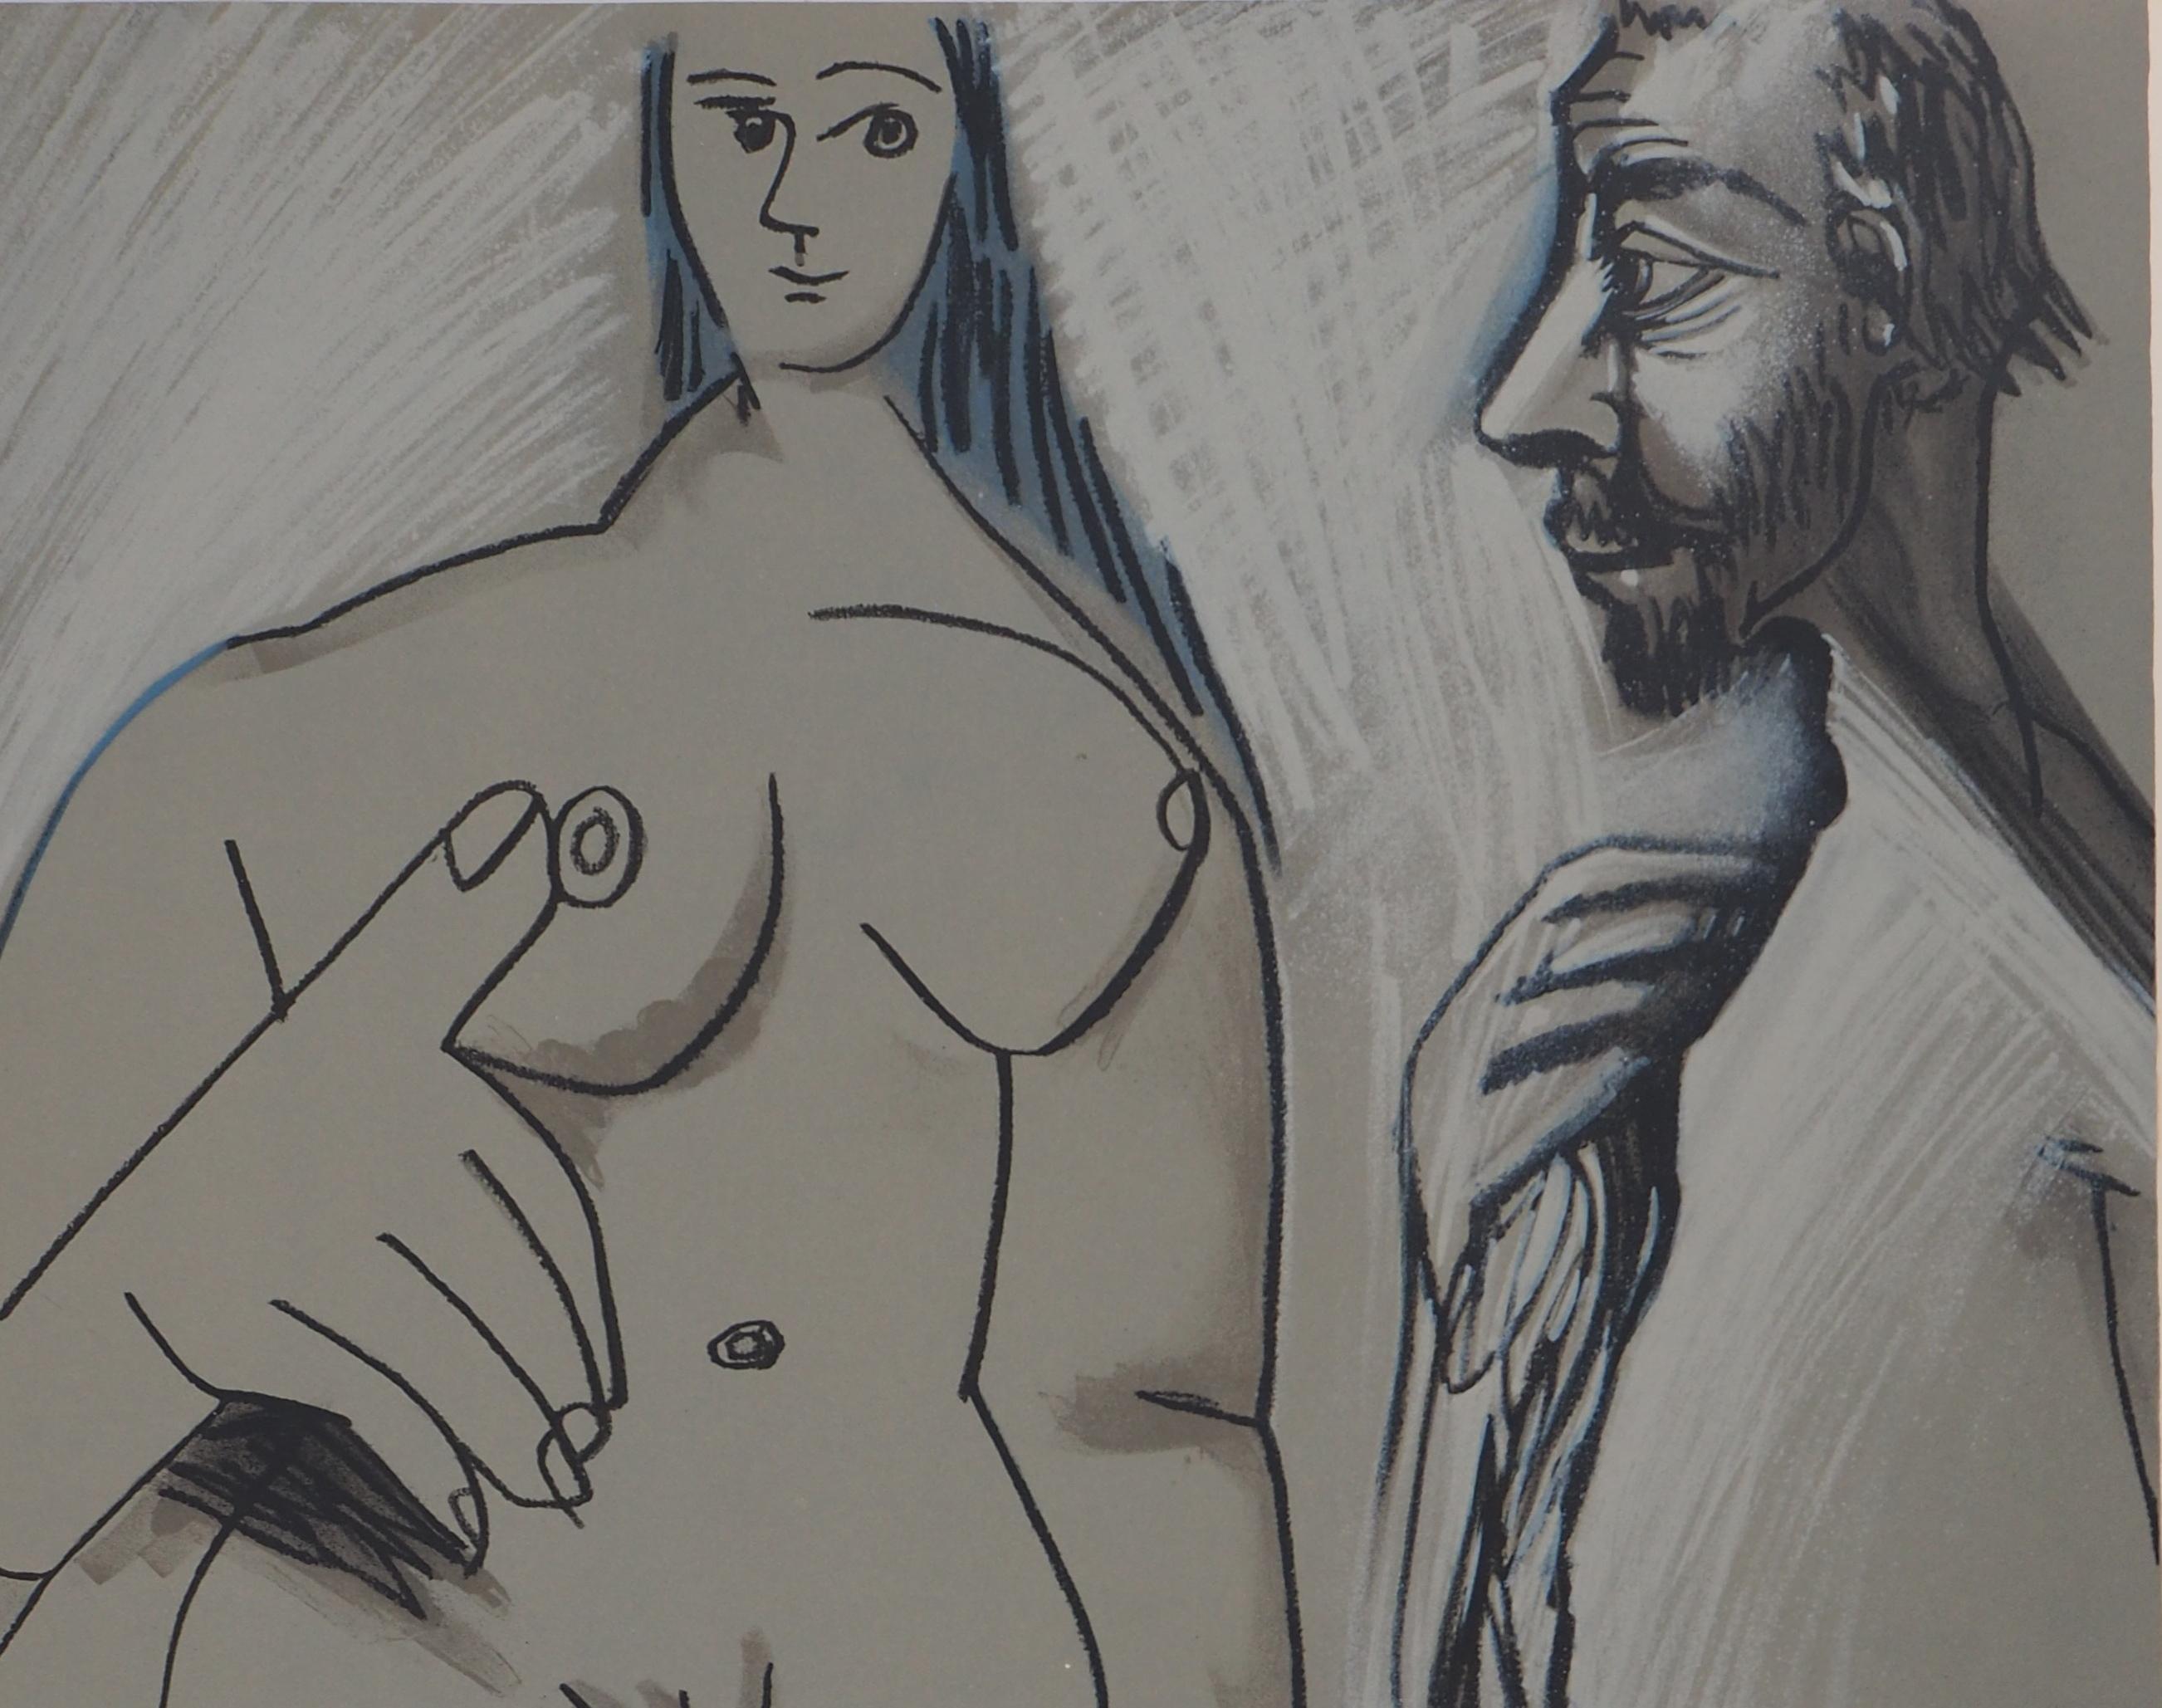 Pablo Picasso (nach)
Modell und Maler

Steinlithographie nach einem Aquarell von Picasso (gedruckt in der Werkstatt Mourlot)
Unterschrift in der Platte gedruckt
Auf Arches-Pergament 50 x 40 cm (c.  19.2 x 15,3 Zoll)
Herausgegeben von Mourlot in den